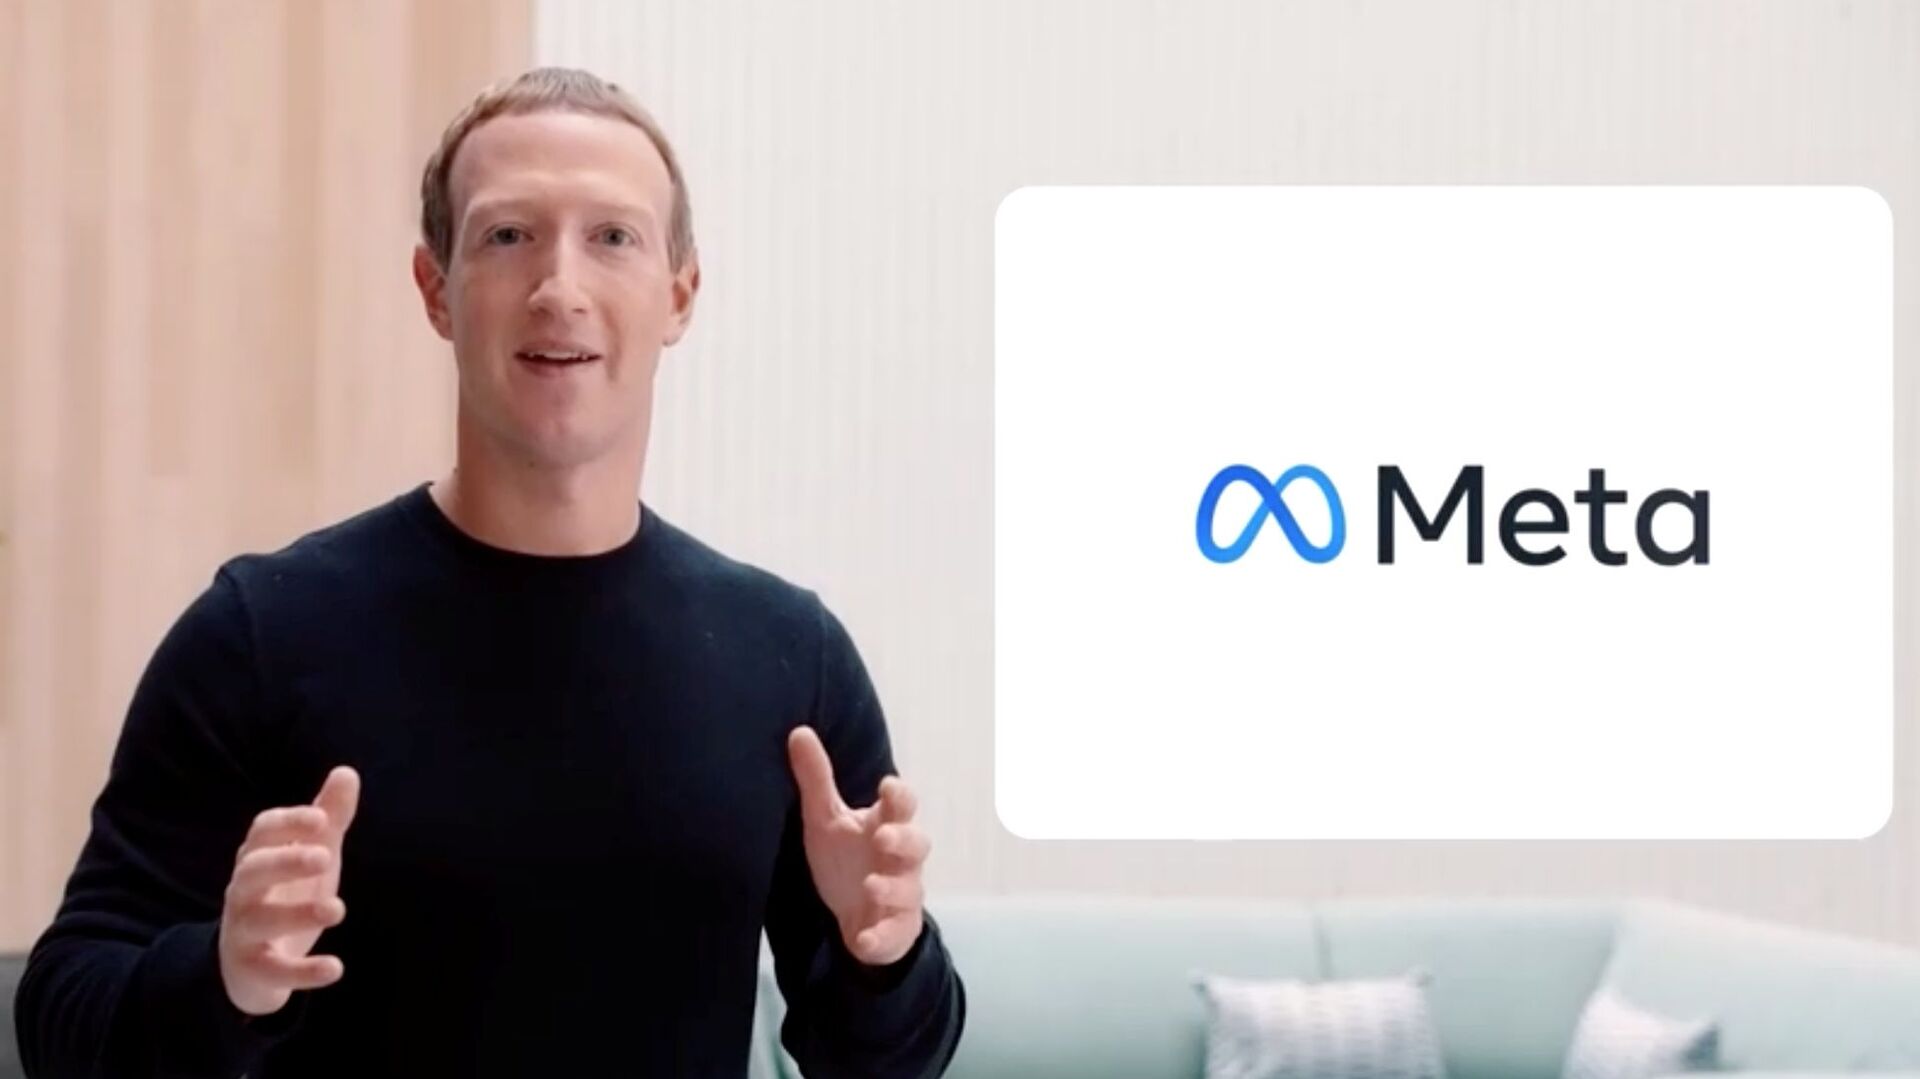 مؤسس شركة فيسبوك مارك زوكربيرغ يغير اسمها إلى ميتا، 28 أكتوبر 2021 - سبوتنيك عربي, 1920, 31.10.2021